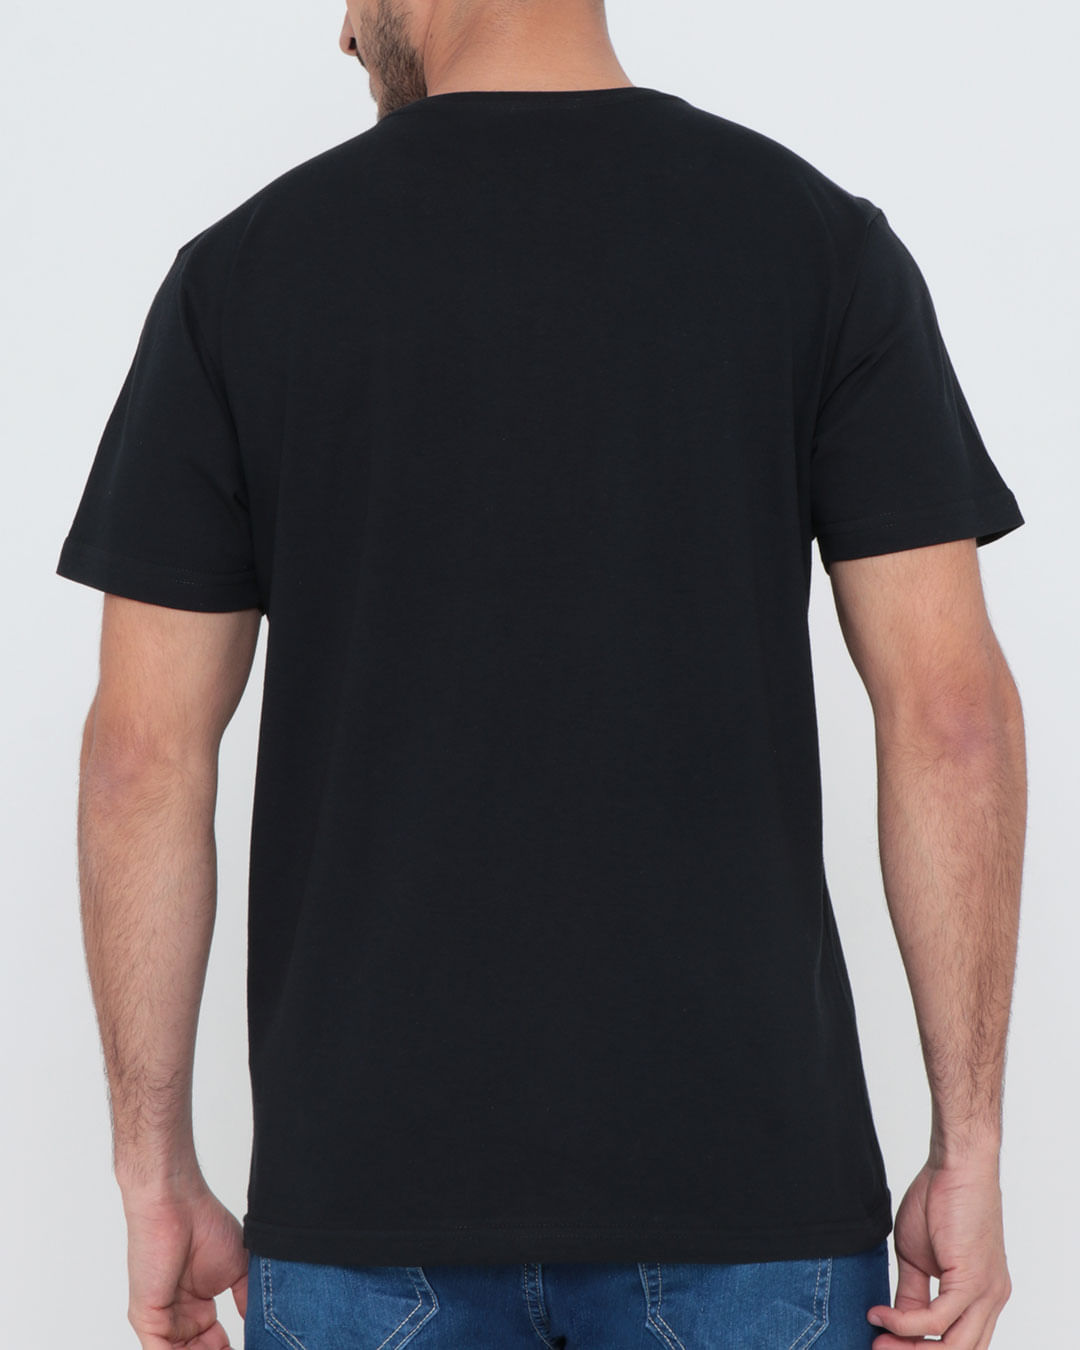 Camiseta-Overcore-Serie-Estre-Aspas-Preta-